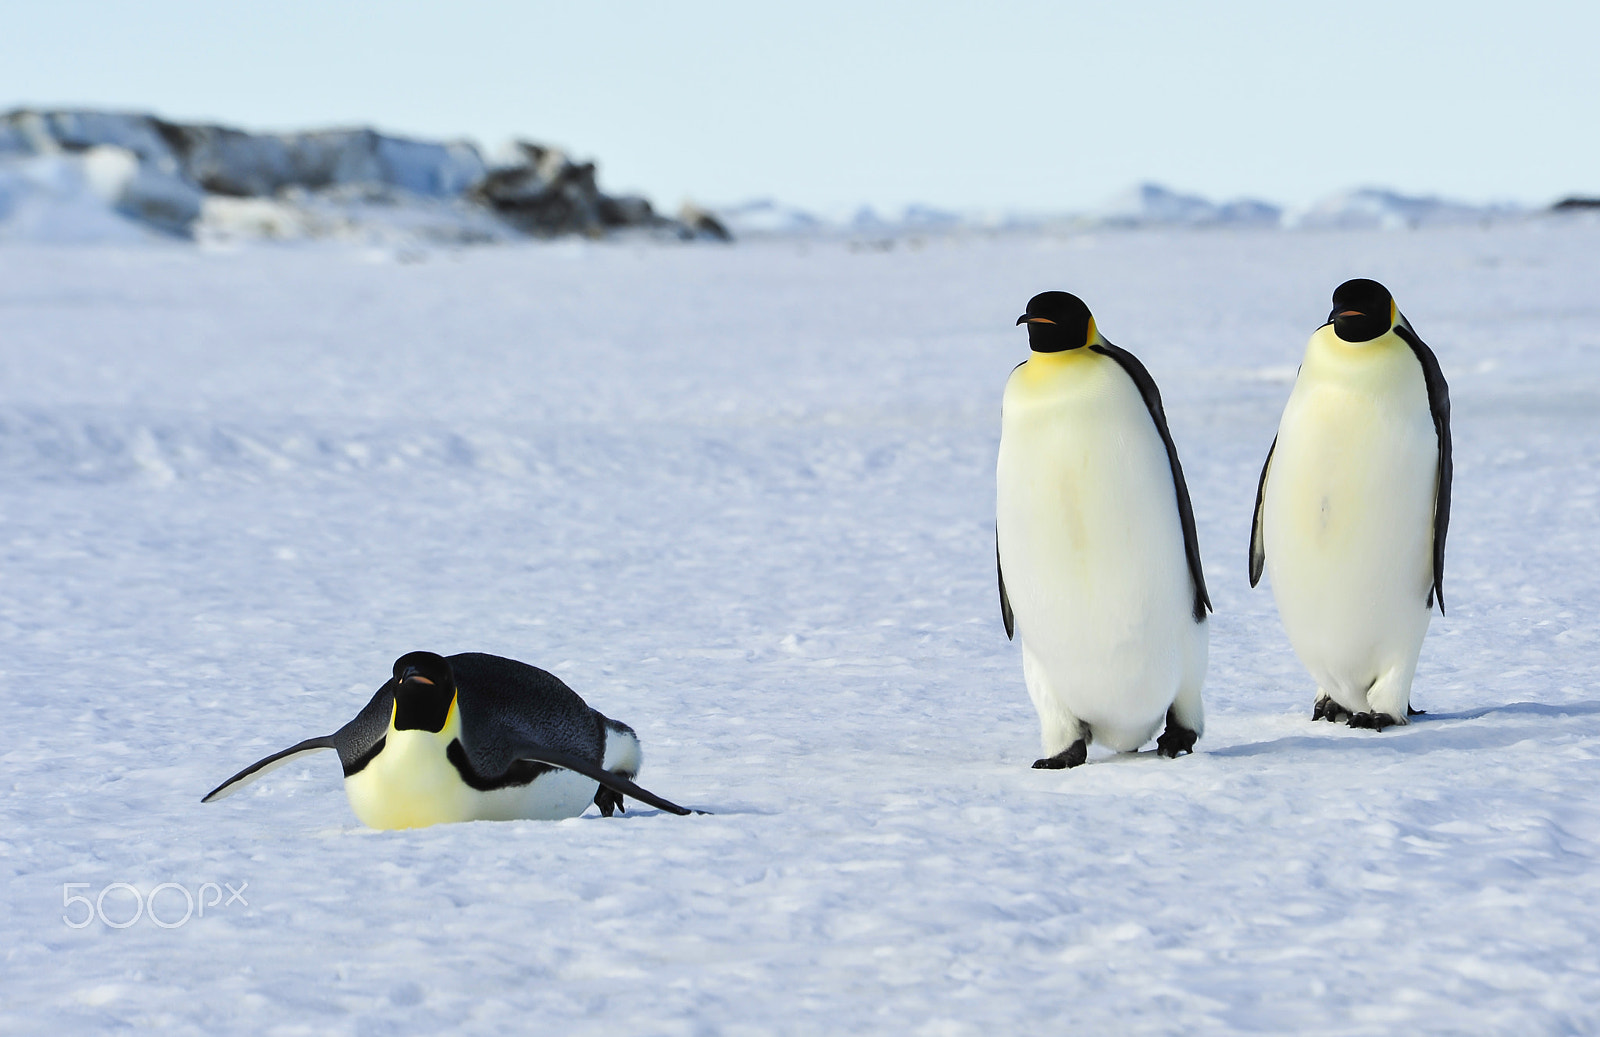 Nikon AF Nikkor 80-400mm F4.5-5.6D ED VR sample photo. Three emperor penguins on the snow photography